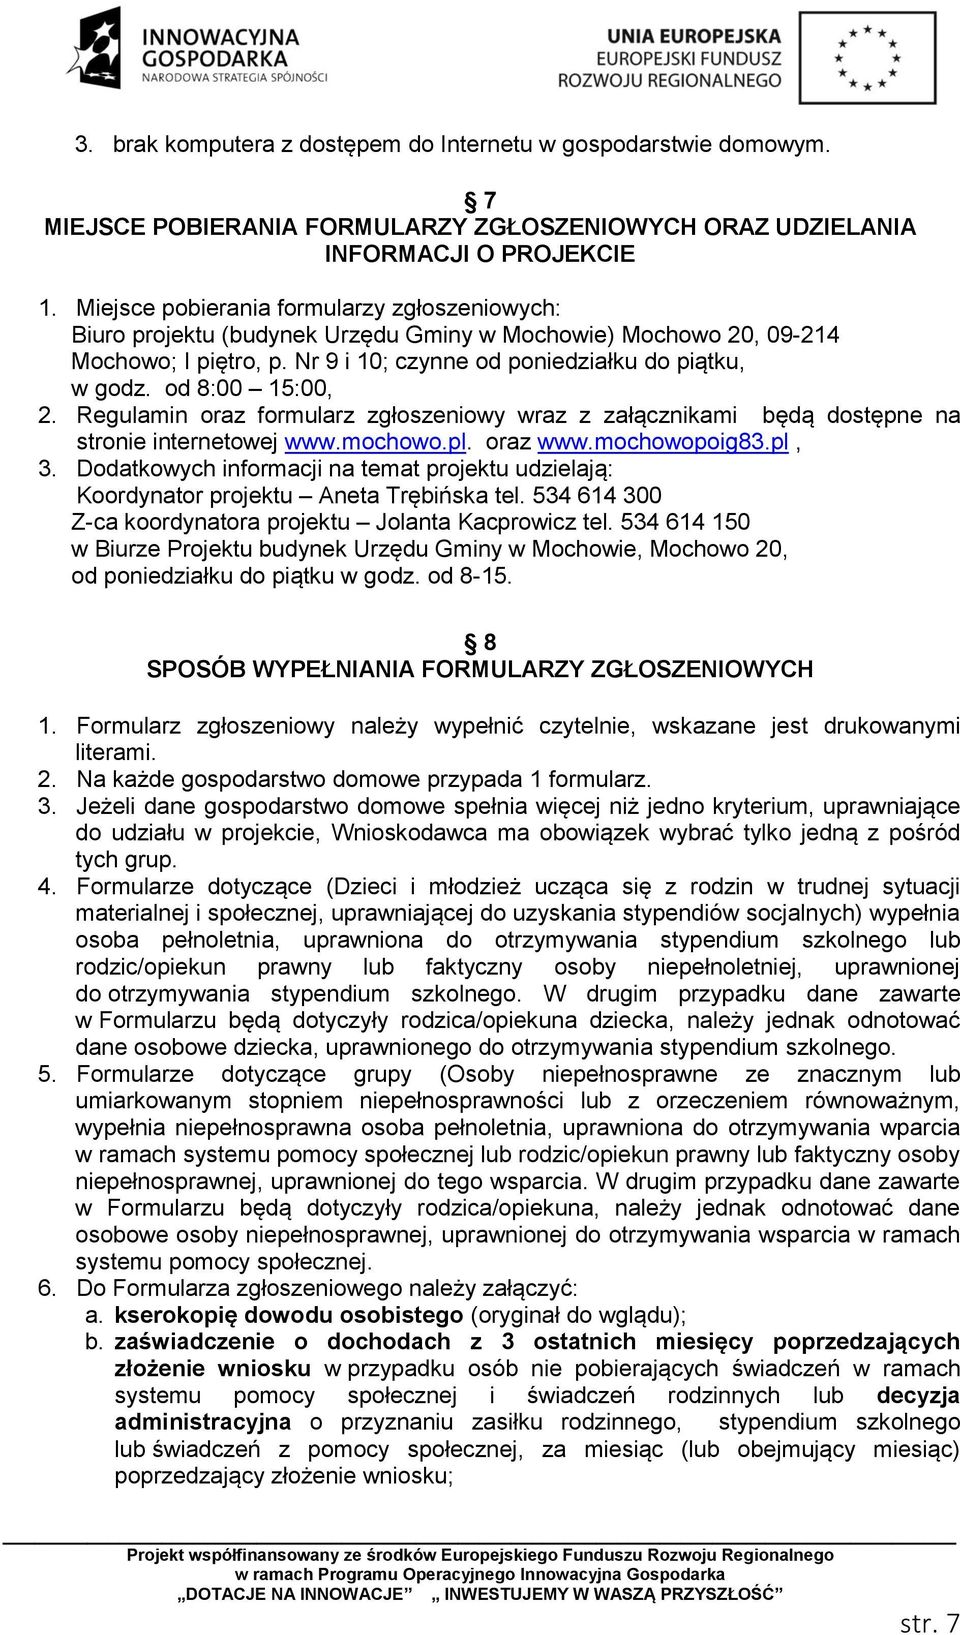 od 8:00 15:00, 2. Regulamin oraz formularz zgłoszeniowy wraz z załącznikami będą dostępne na stronie internetowej www.mochowo.pl. oraz www.mochowopoig83.pl, 3.